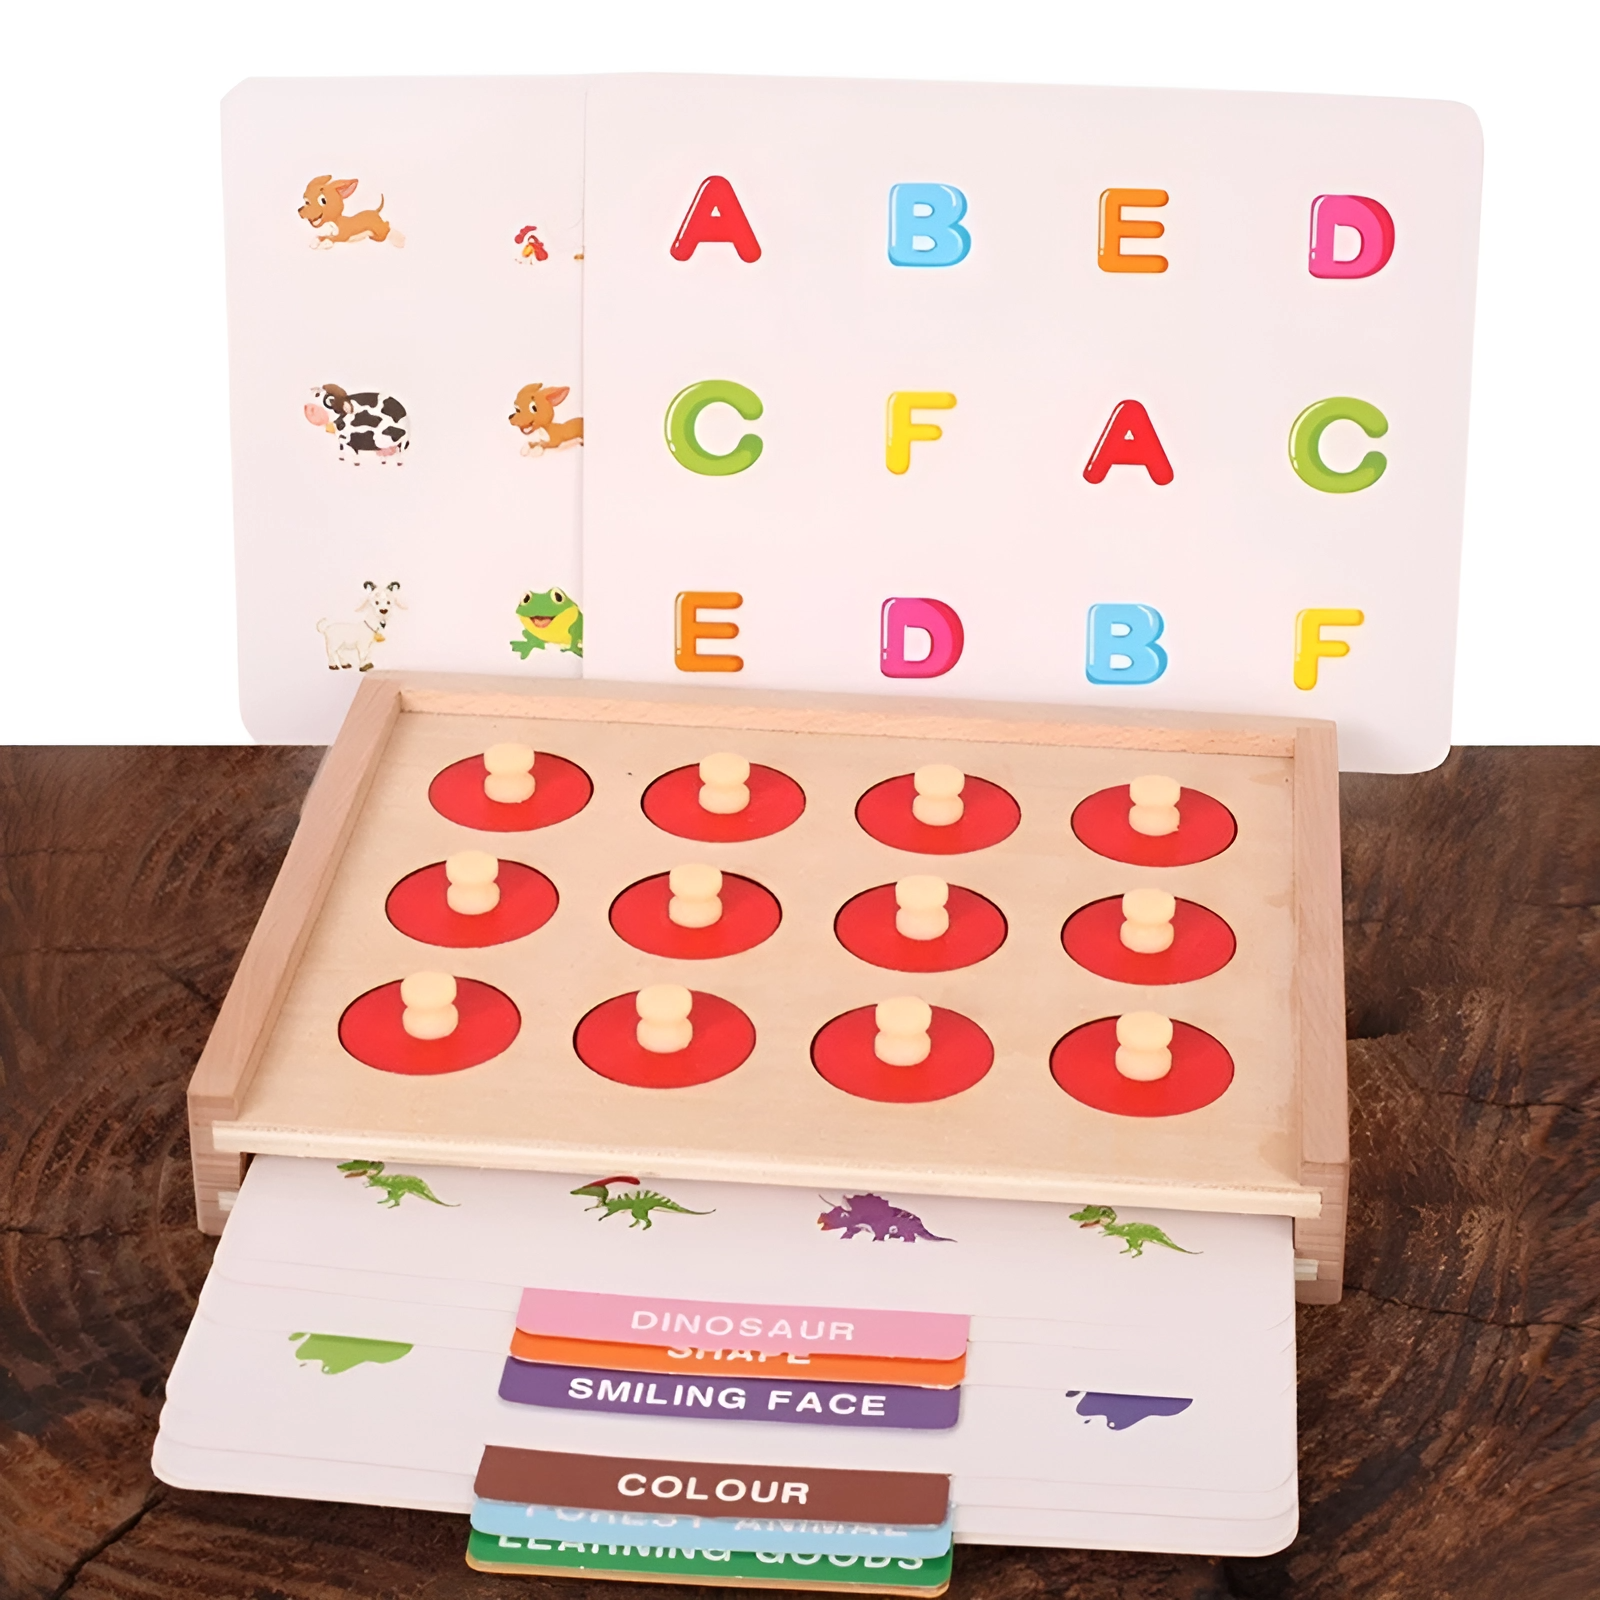 Развивающая деревянная игра Belvedere kids с множеством ярких кочек Memory game развивающая игрушка лесная мастерская азбука окружающего мира